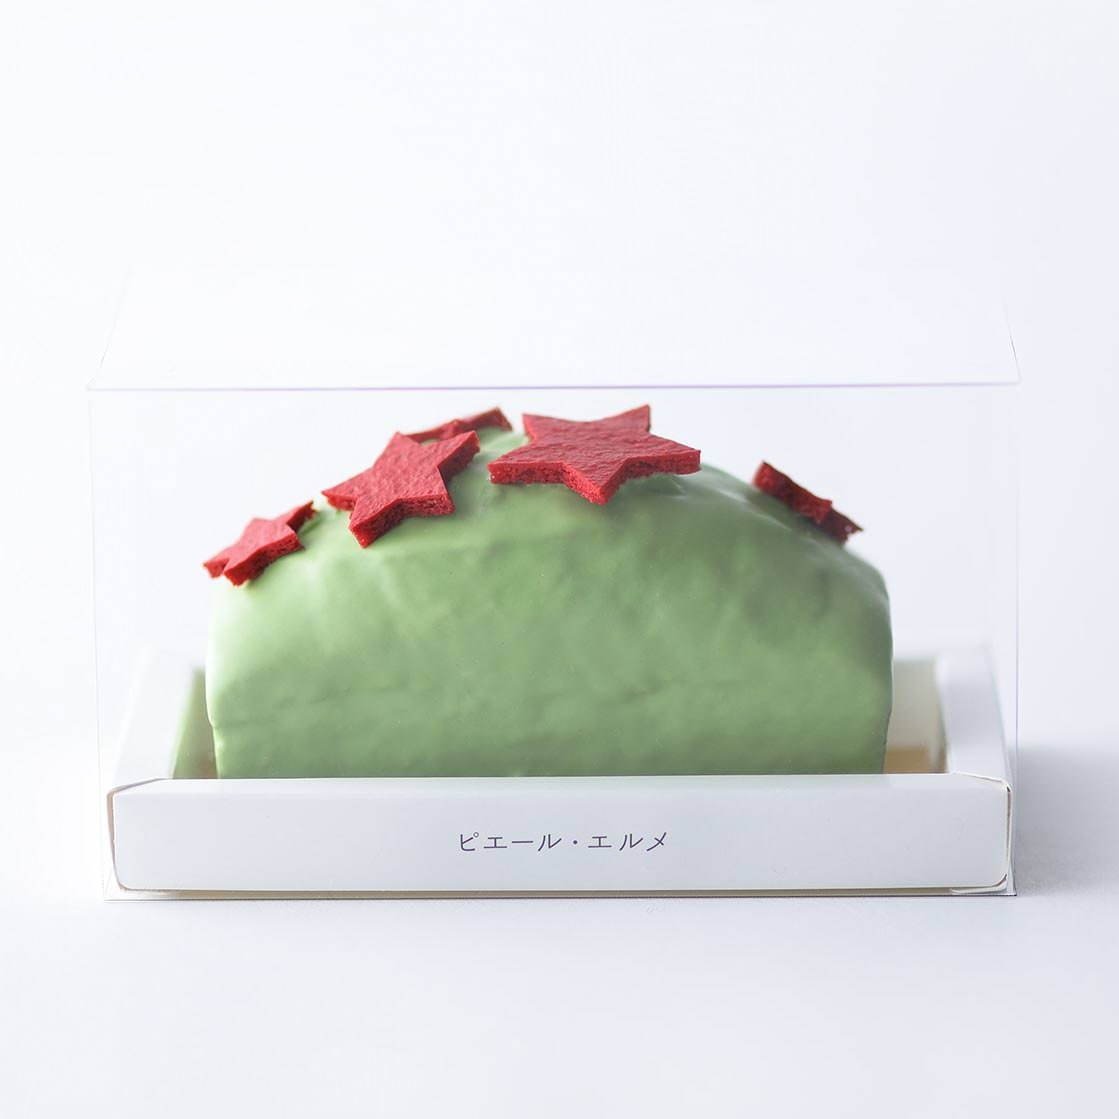 Made In ピエール エルメ 星形マカロン のクリスマスパウンドケーキ ピスタチオ ラズベリー ファッションプレス